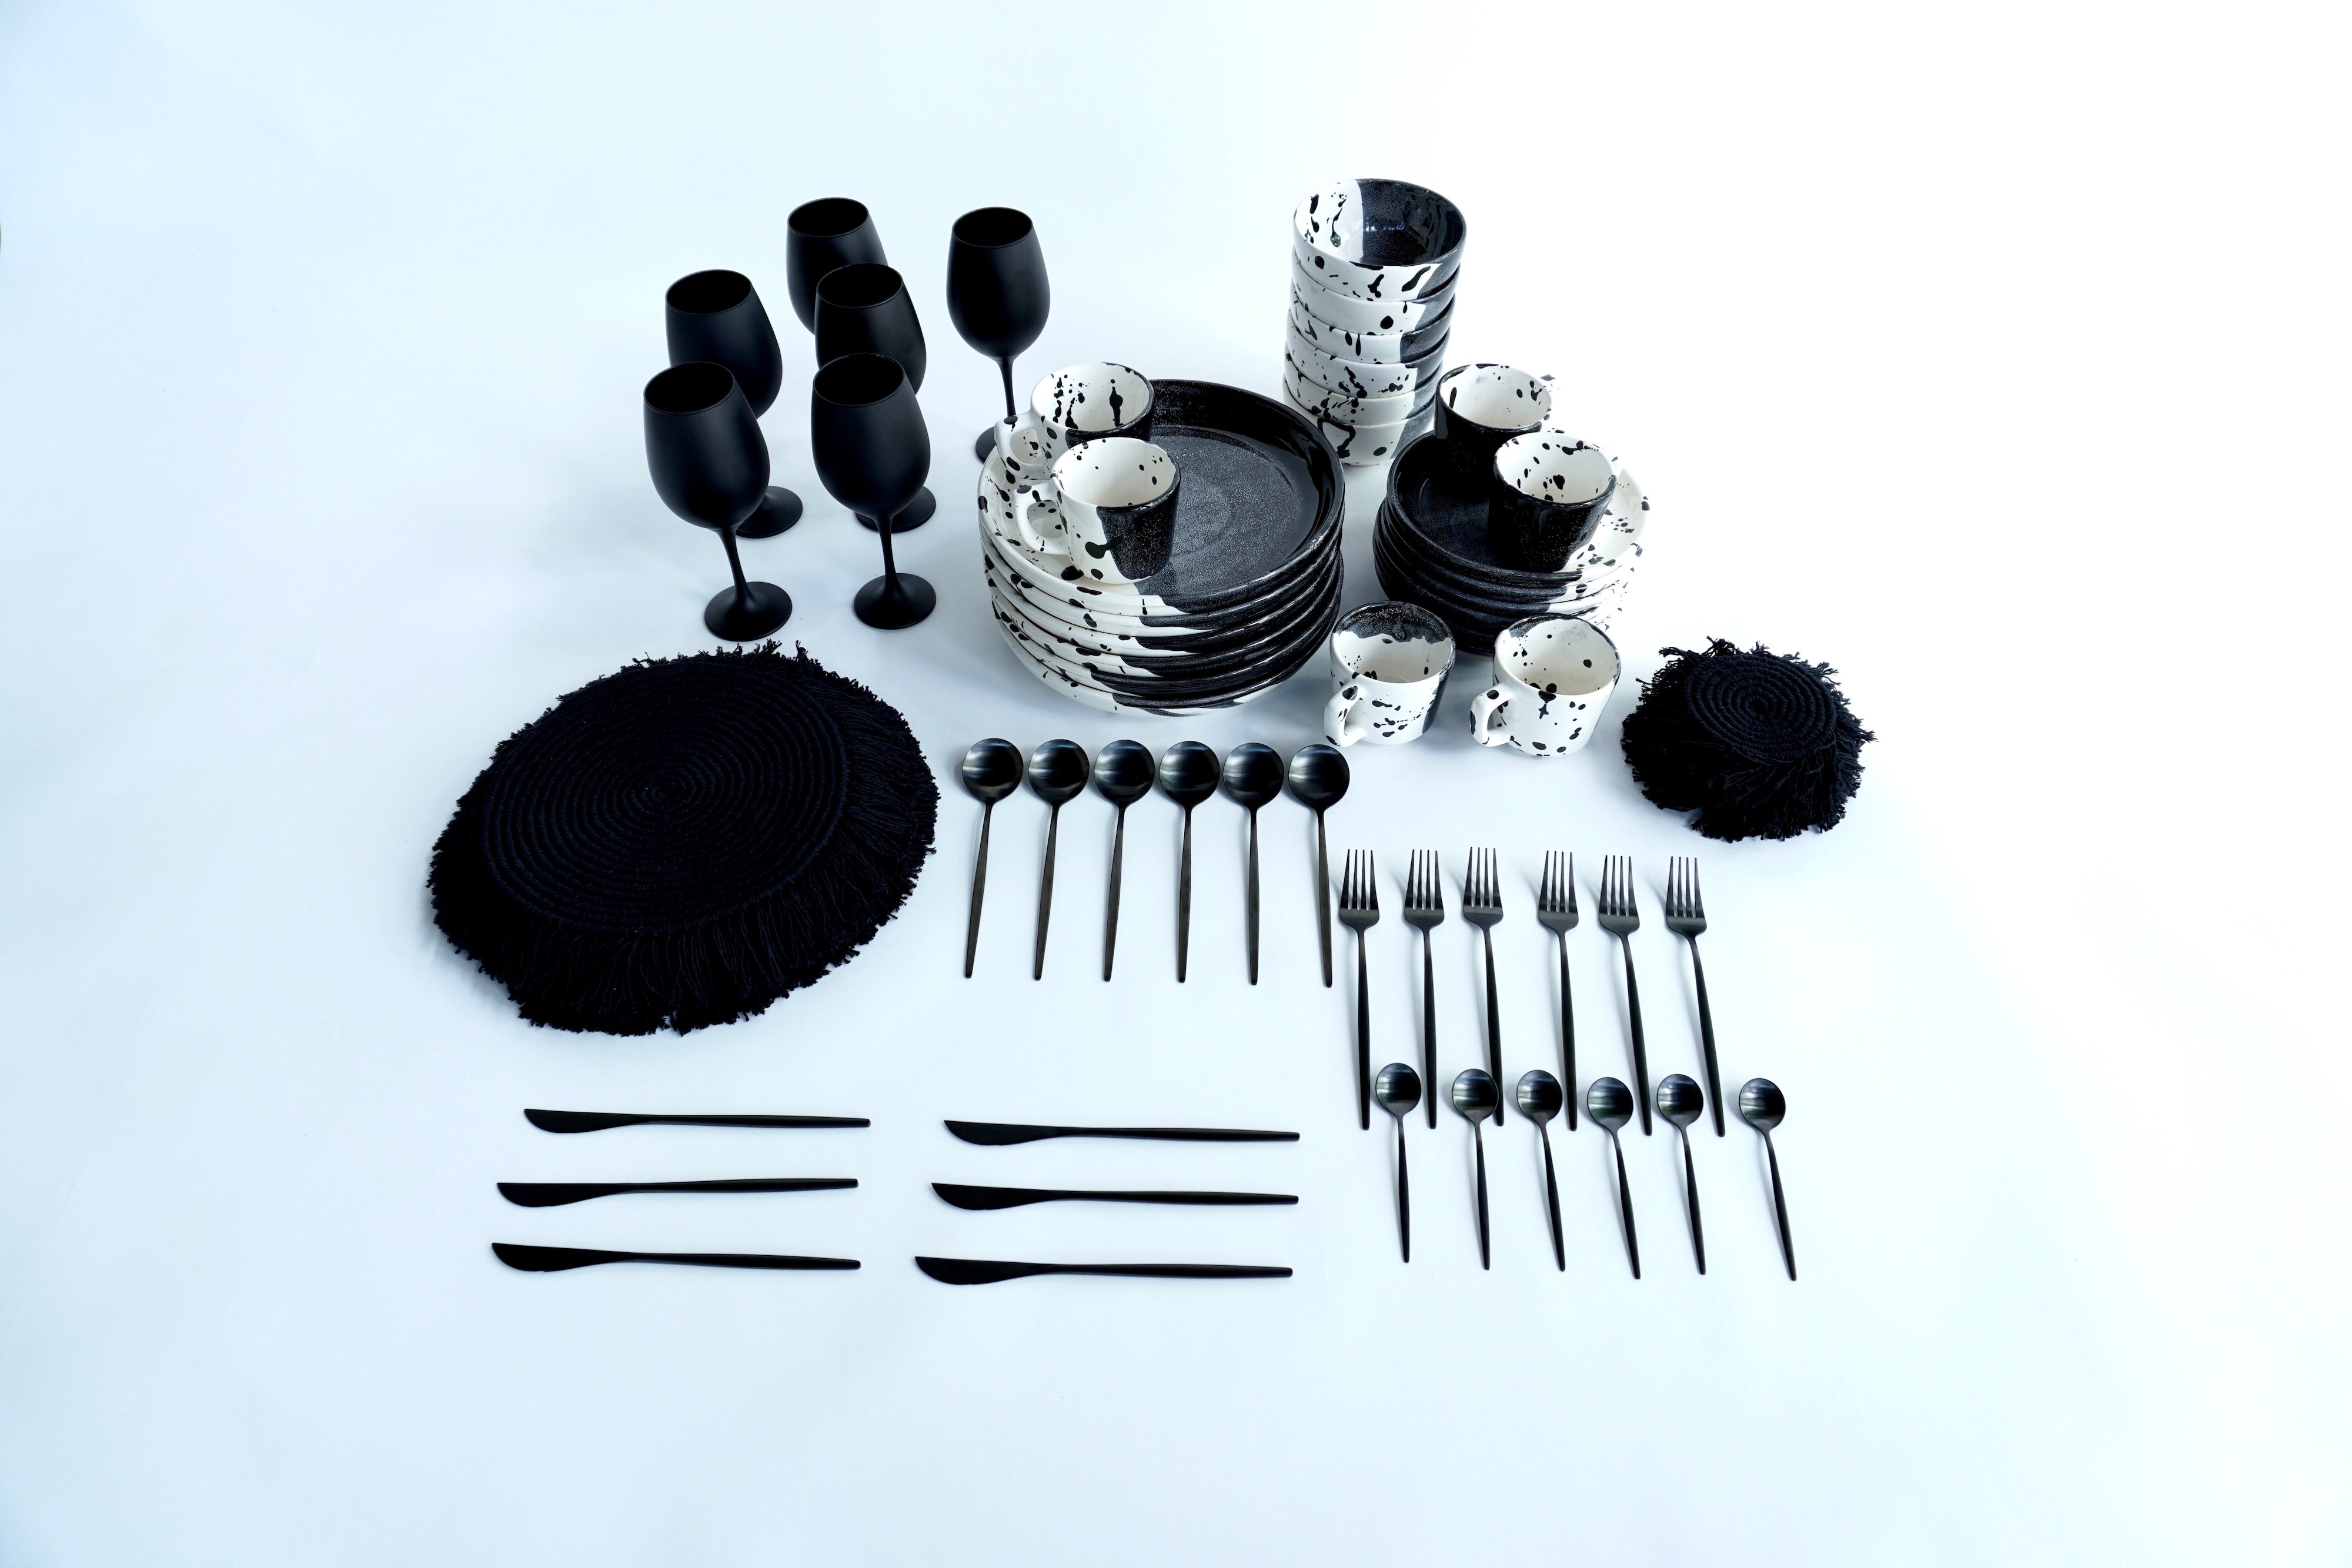 Tinta negra brillante | Set imperial vajilla línea clásica con copas negro mate, cubiertos, manteles y portavasos para 6 personas